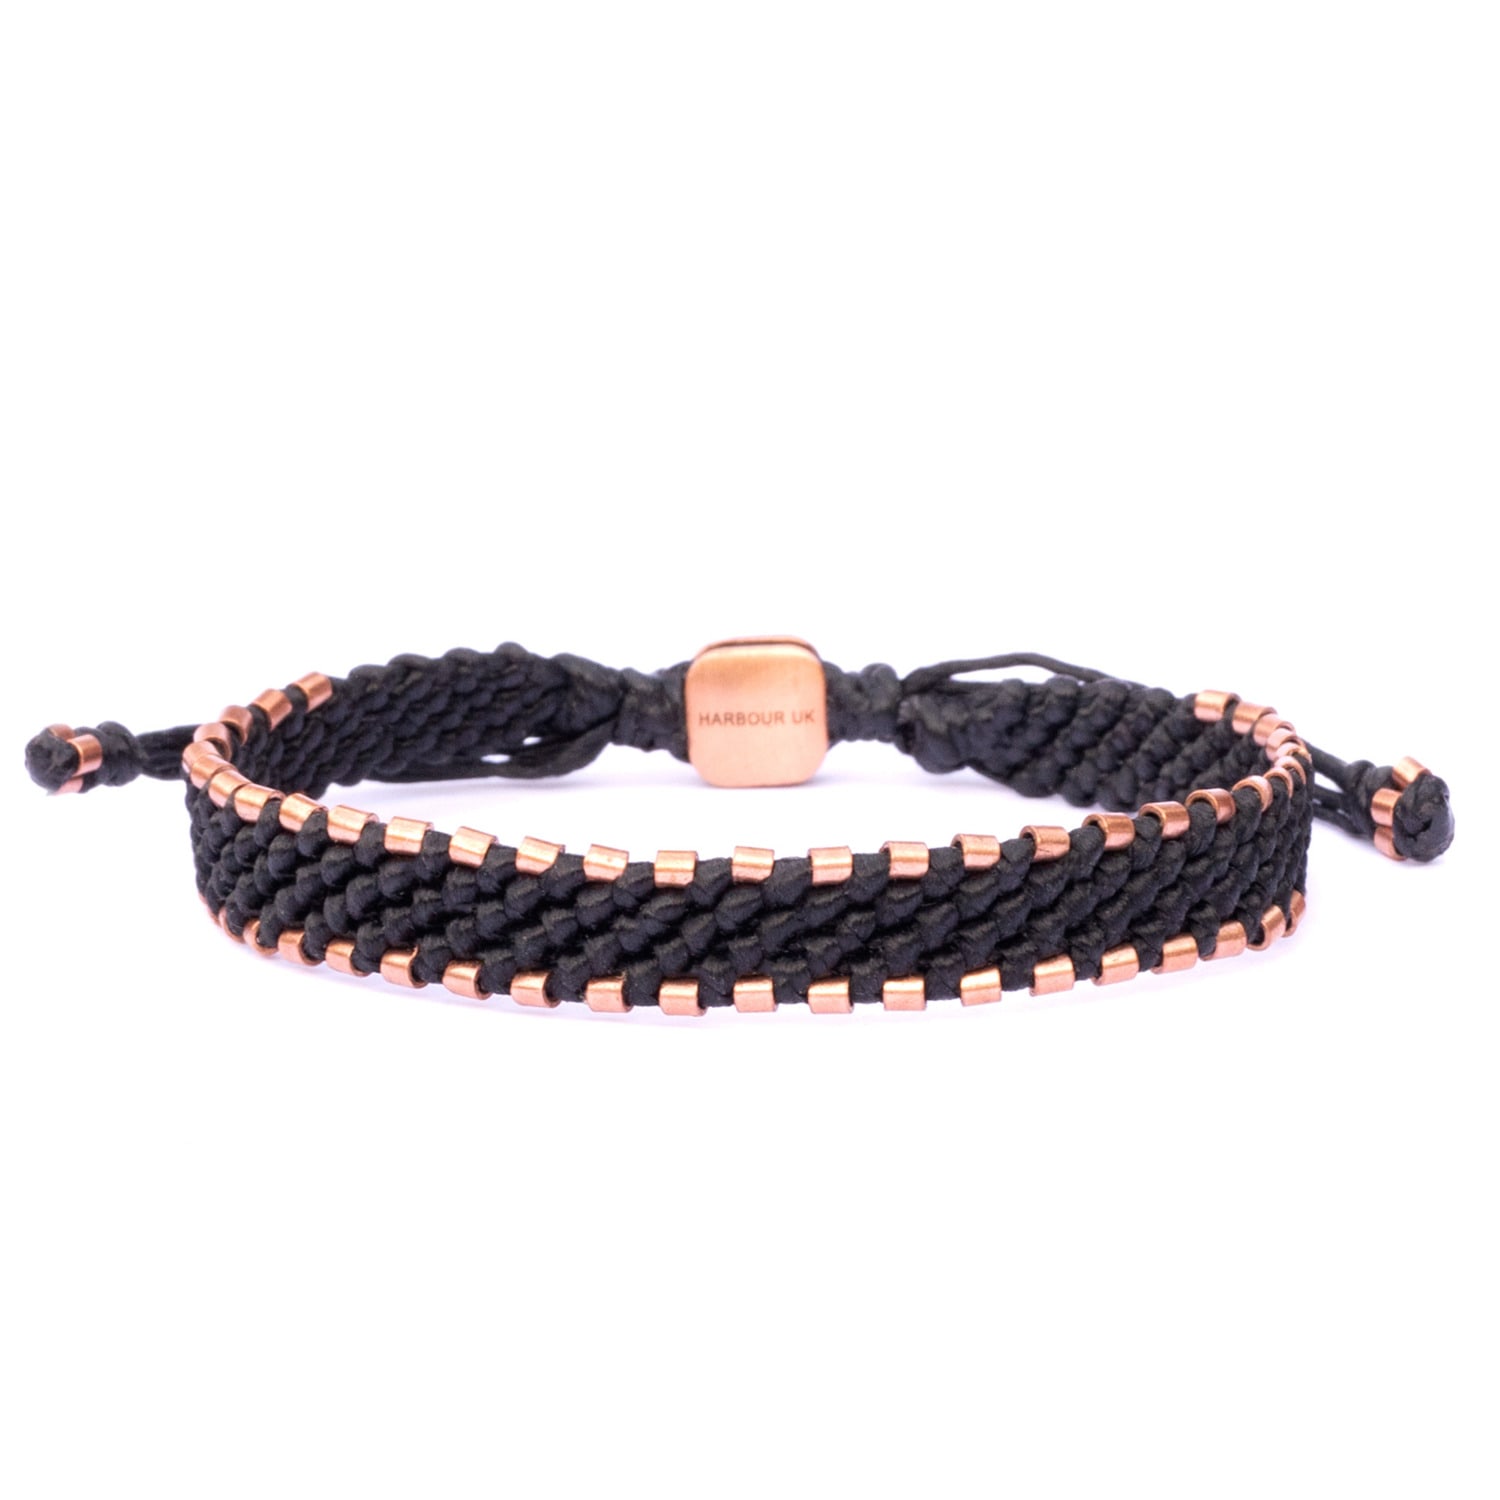 Solid Copper Bracelet For Mens All Black - Black Harbour UK Bracelets